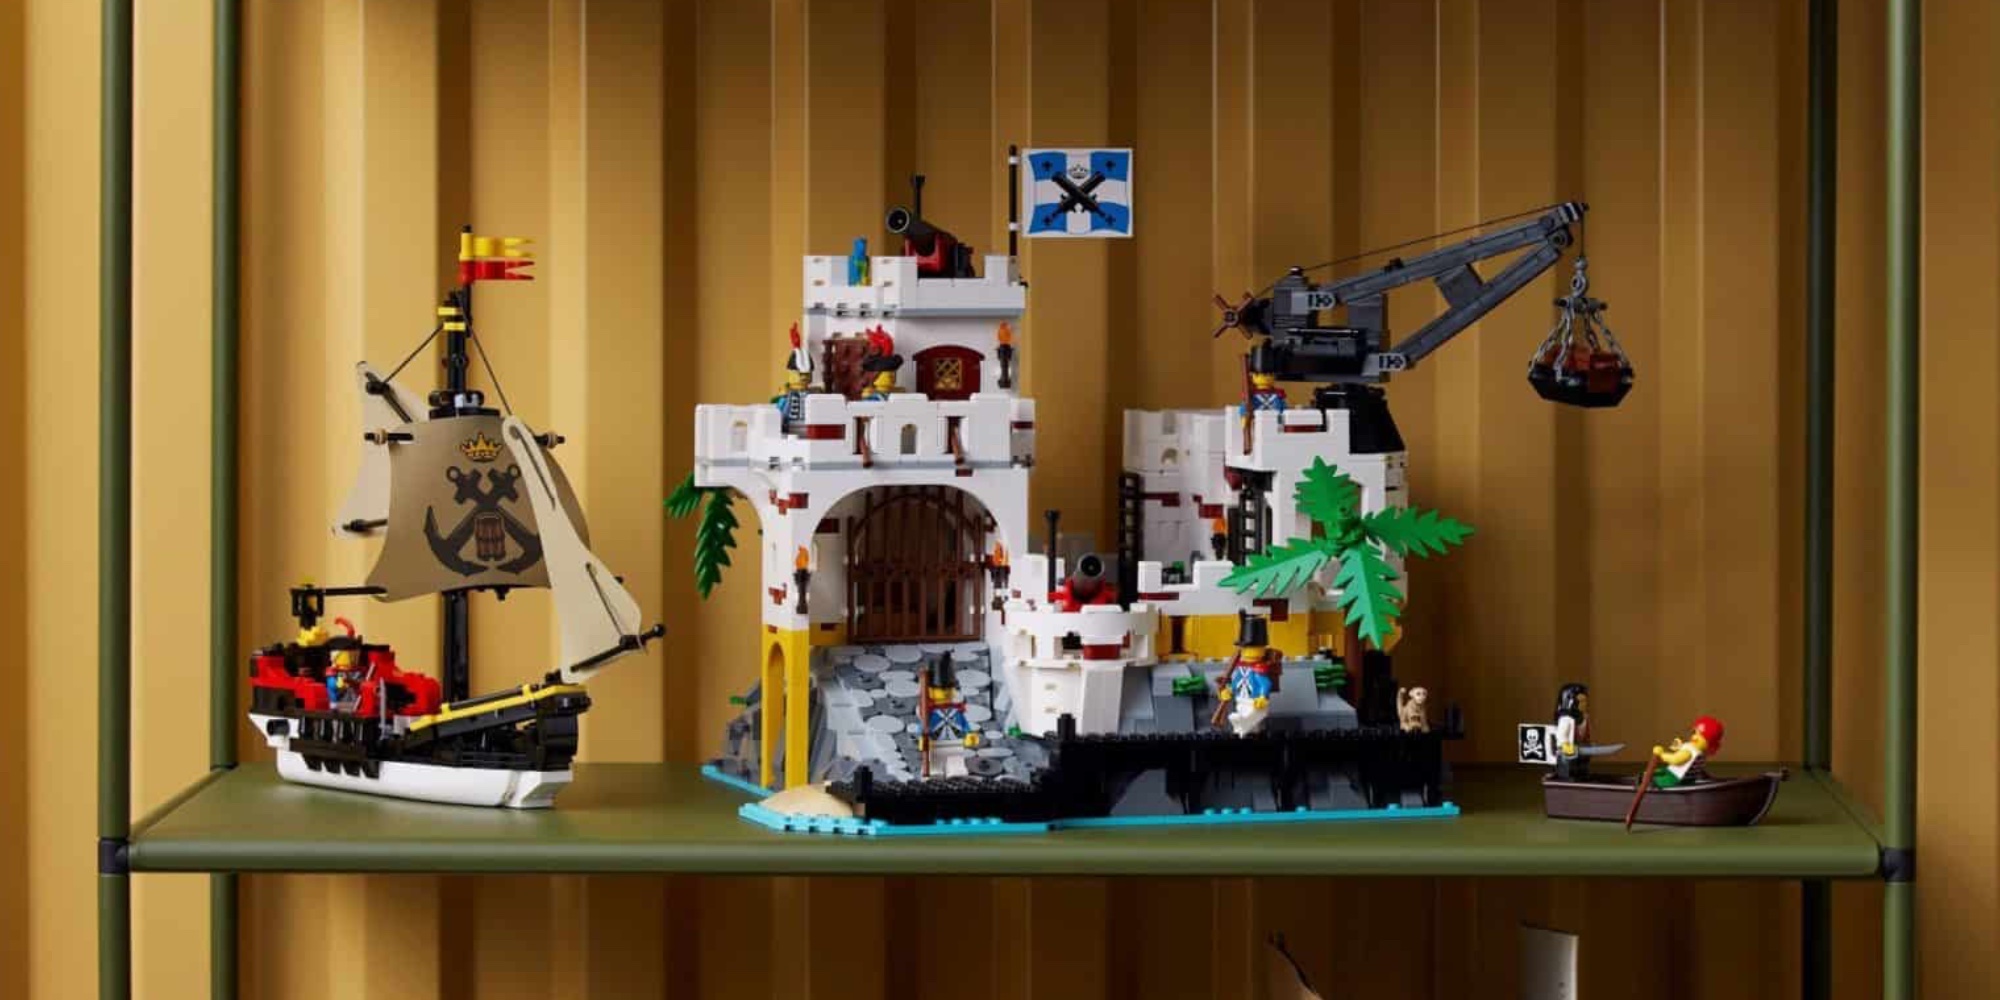 LEGO Eldorado revealed 2,500 pieces